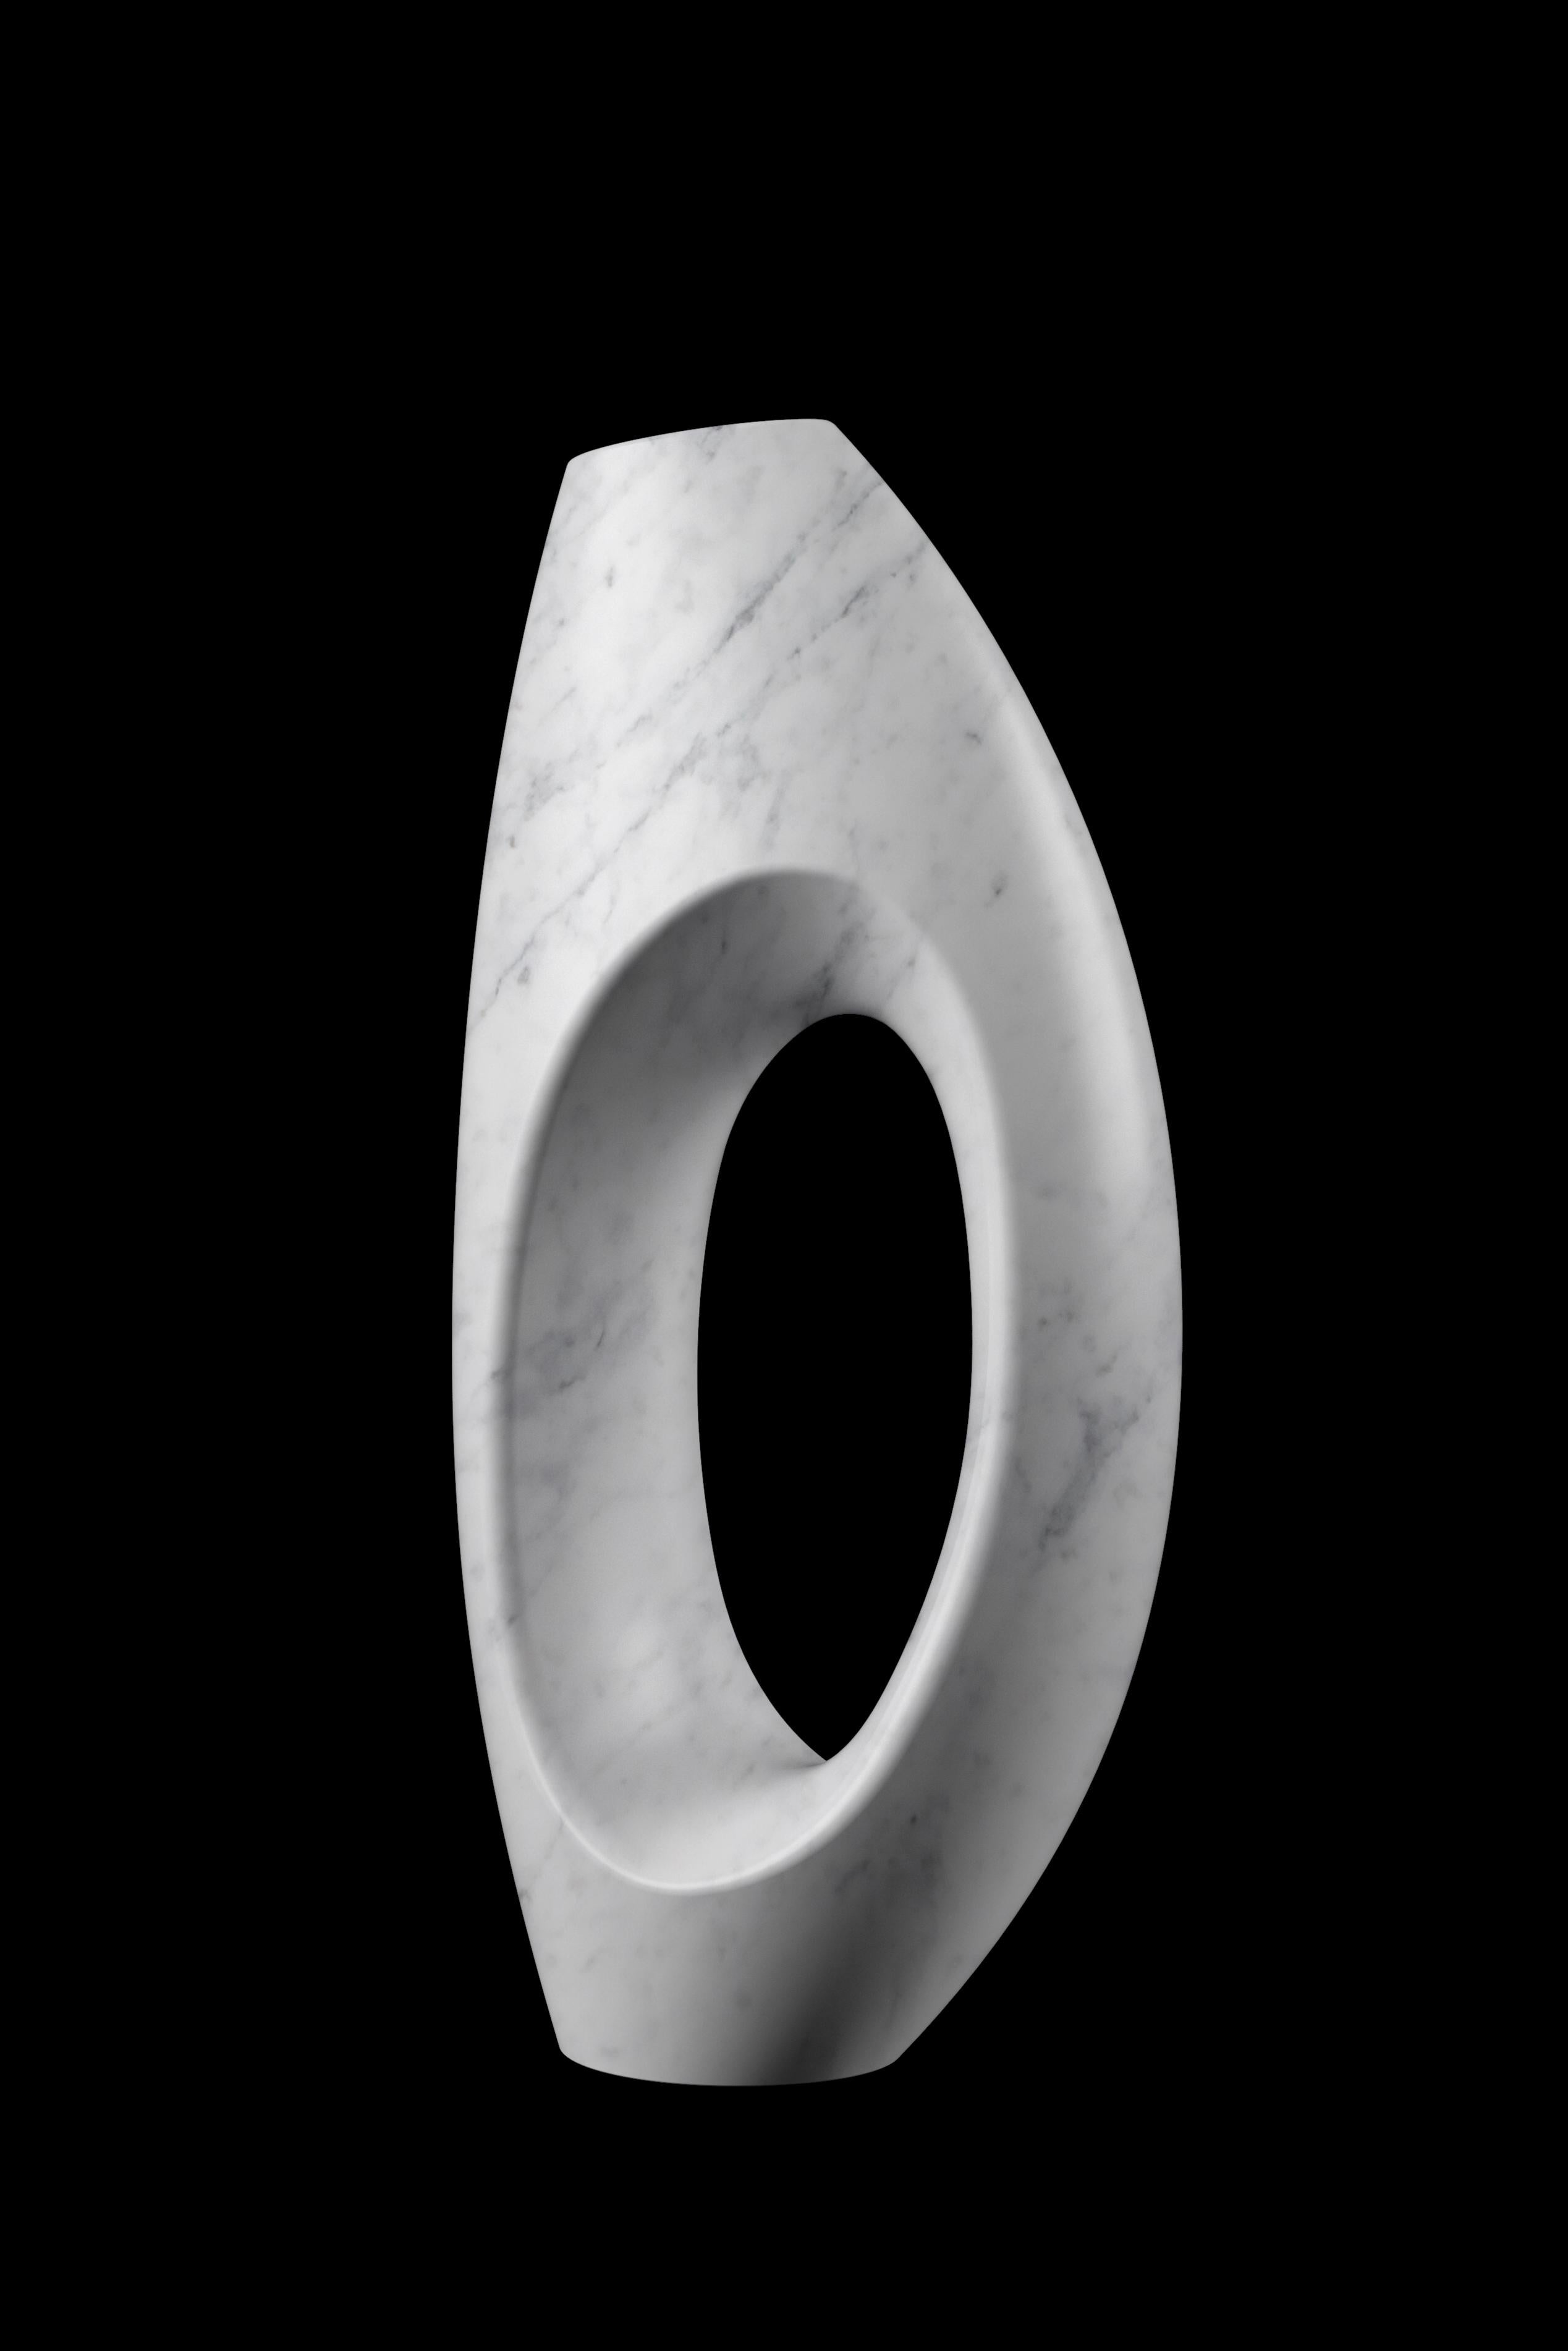 Vase sculptural taillé à la main dans un bloc massif de marbre blanc de Carrare, finition velours. Ce vase reproduit, dans une version plus petite, le vase sculptural iconique PV02 conçu par l'Atelier Barberini & Gunnell, fabriqué à la main en